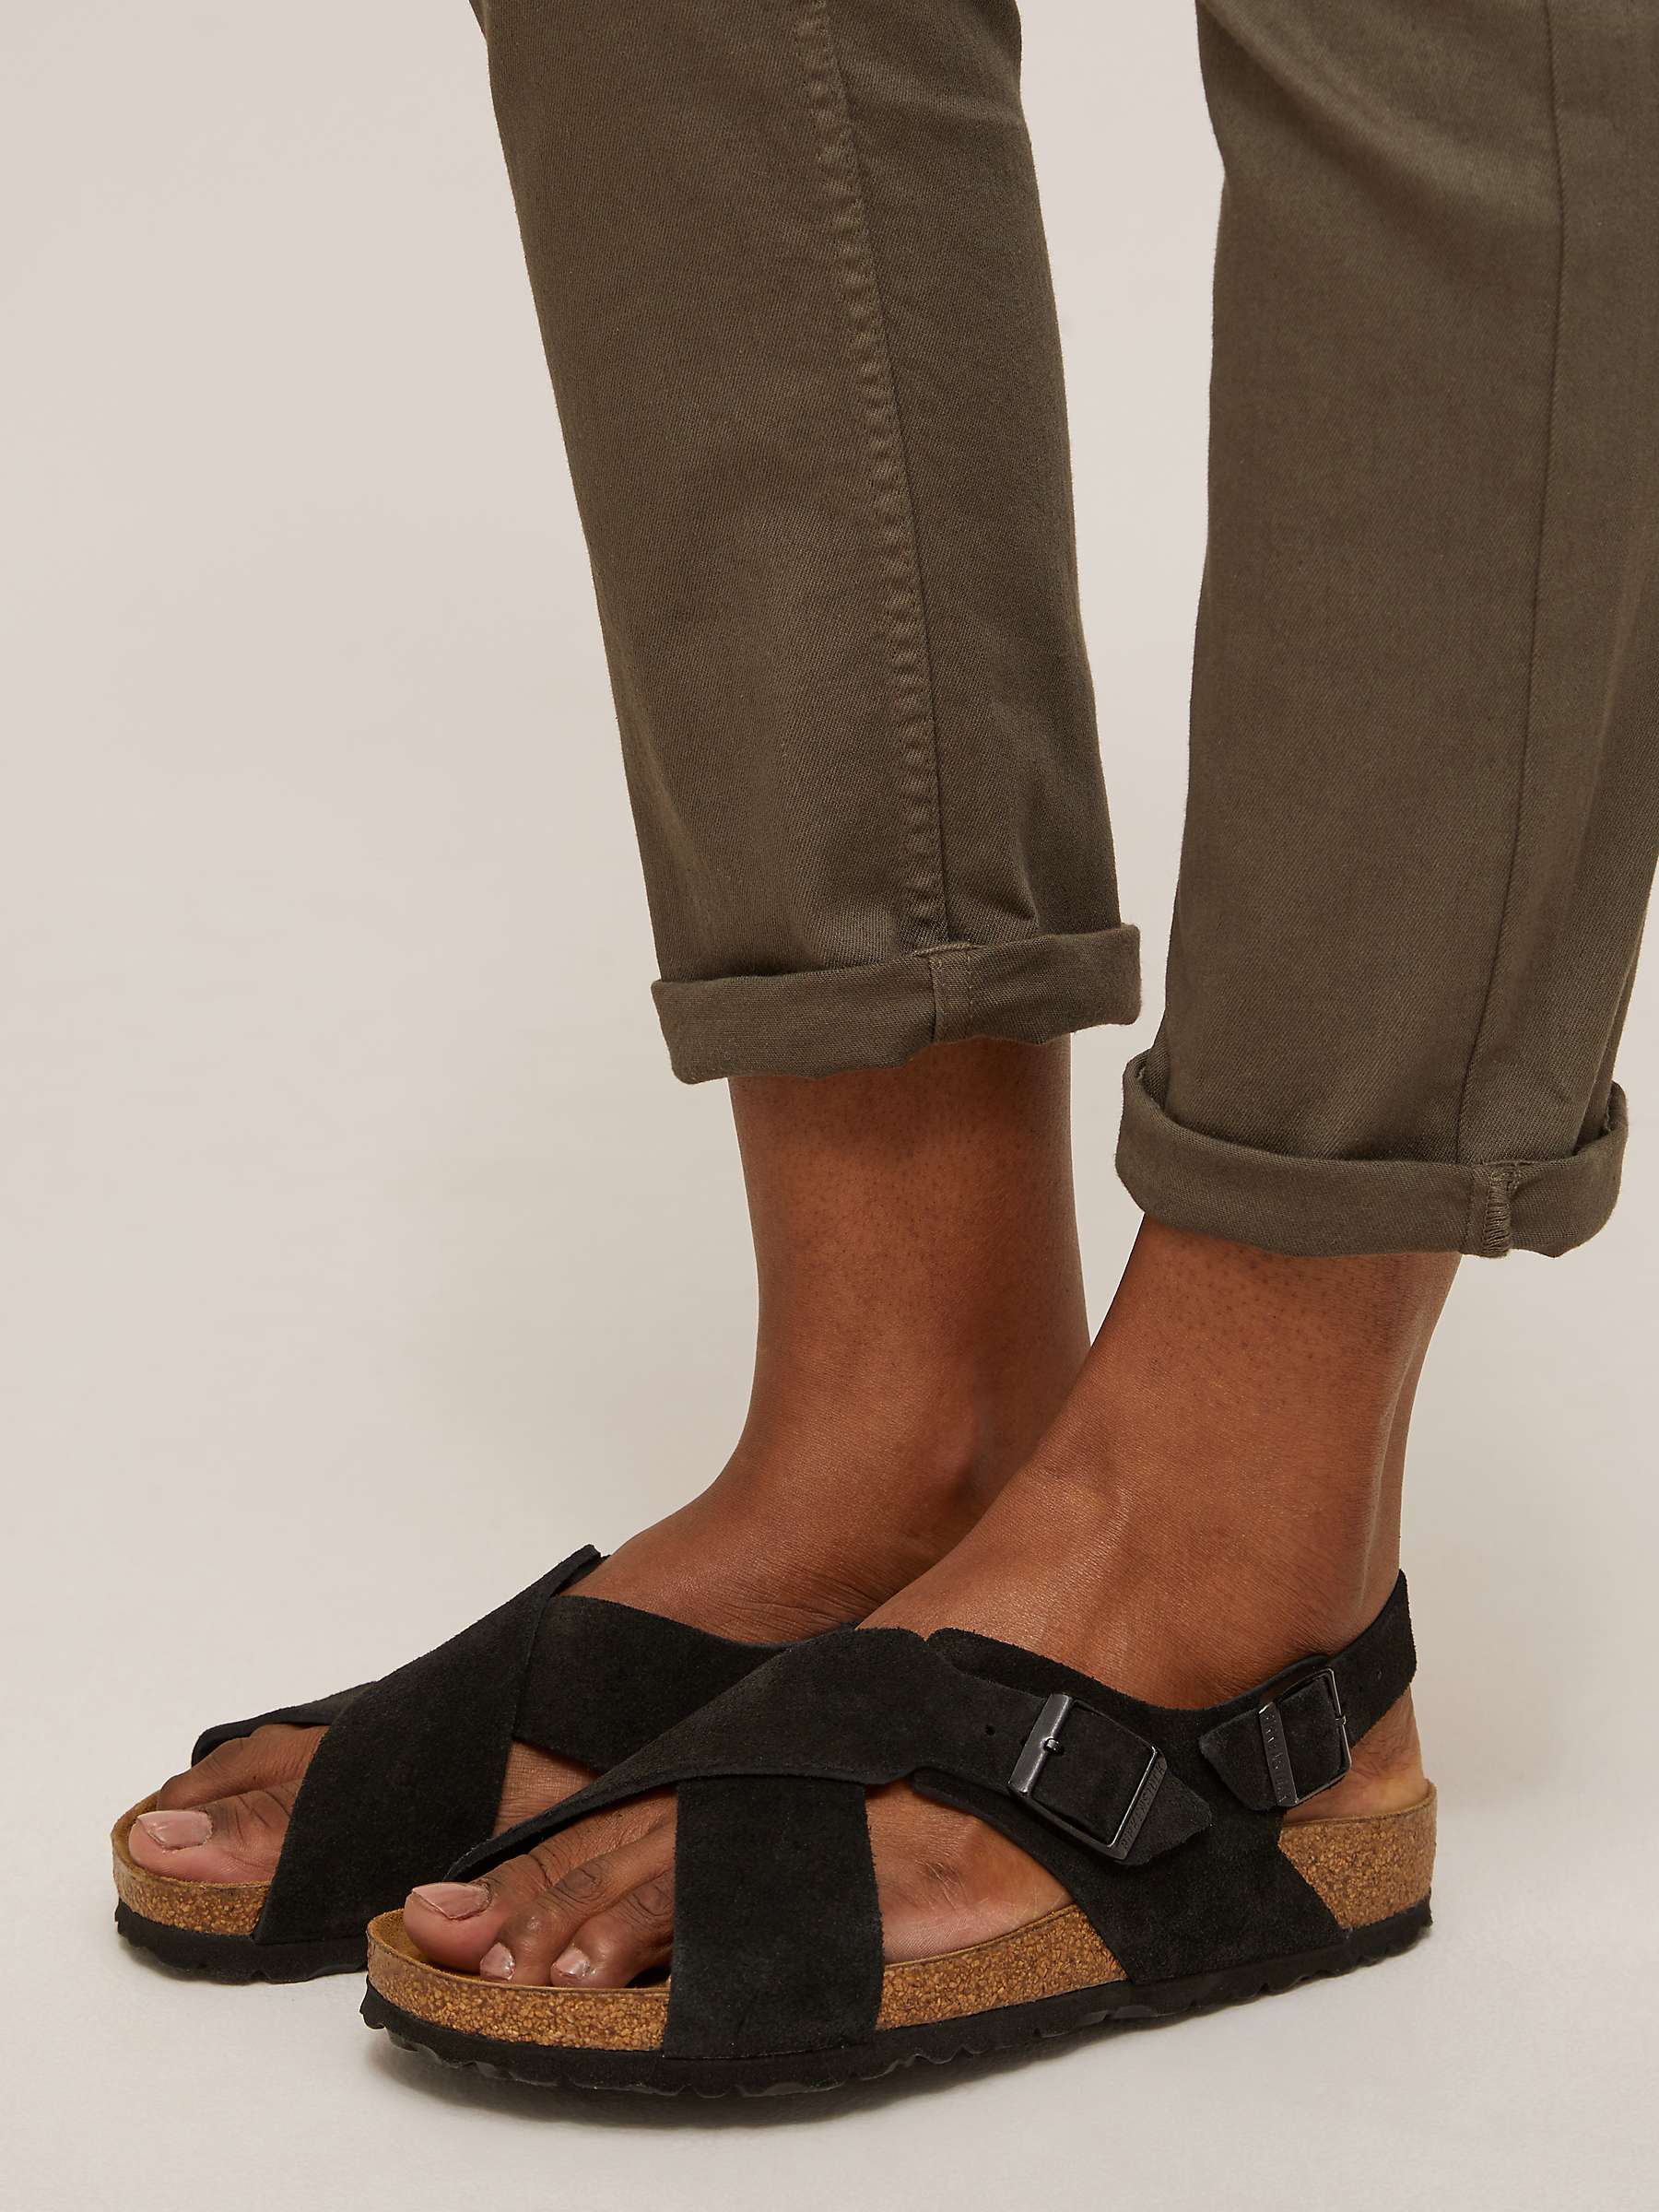 Birkenstock Tulum Suede Cross Strap Sandals, Black at John Lewis & Partners